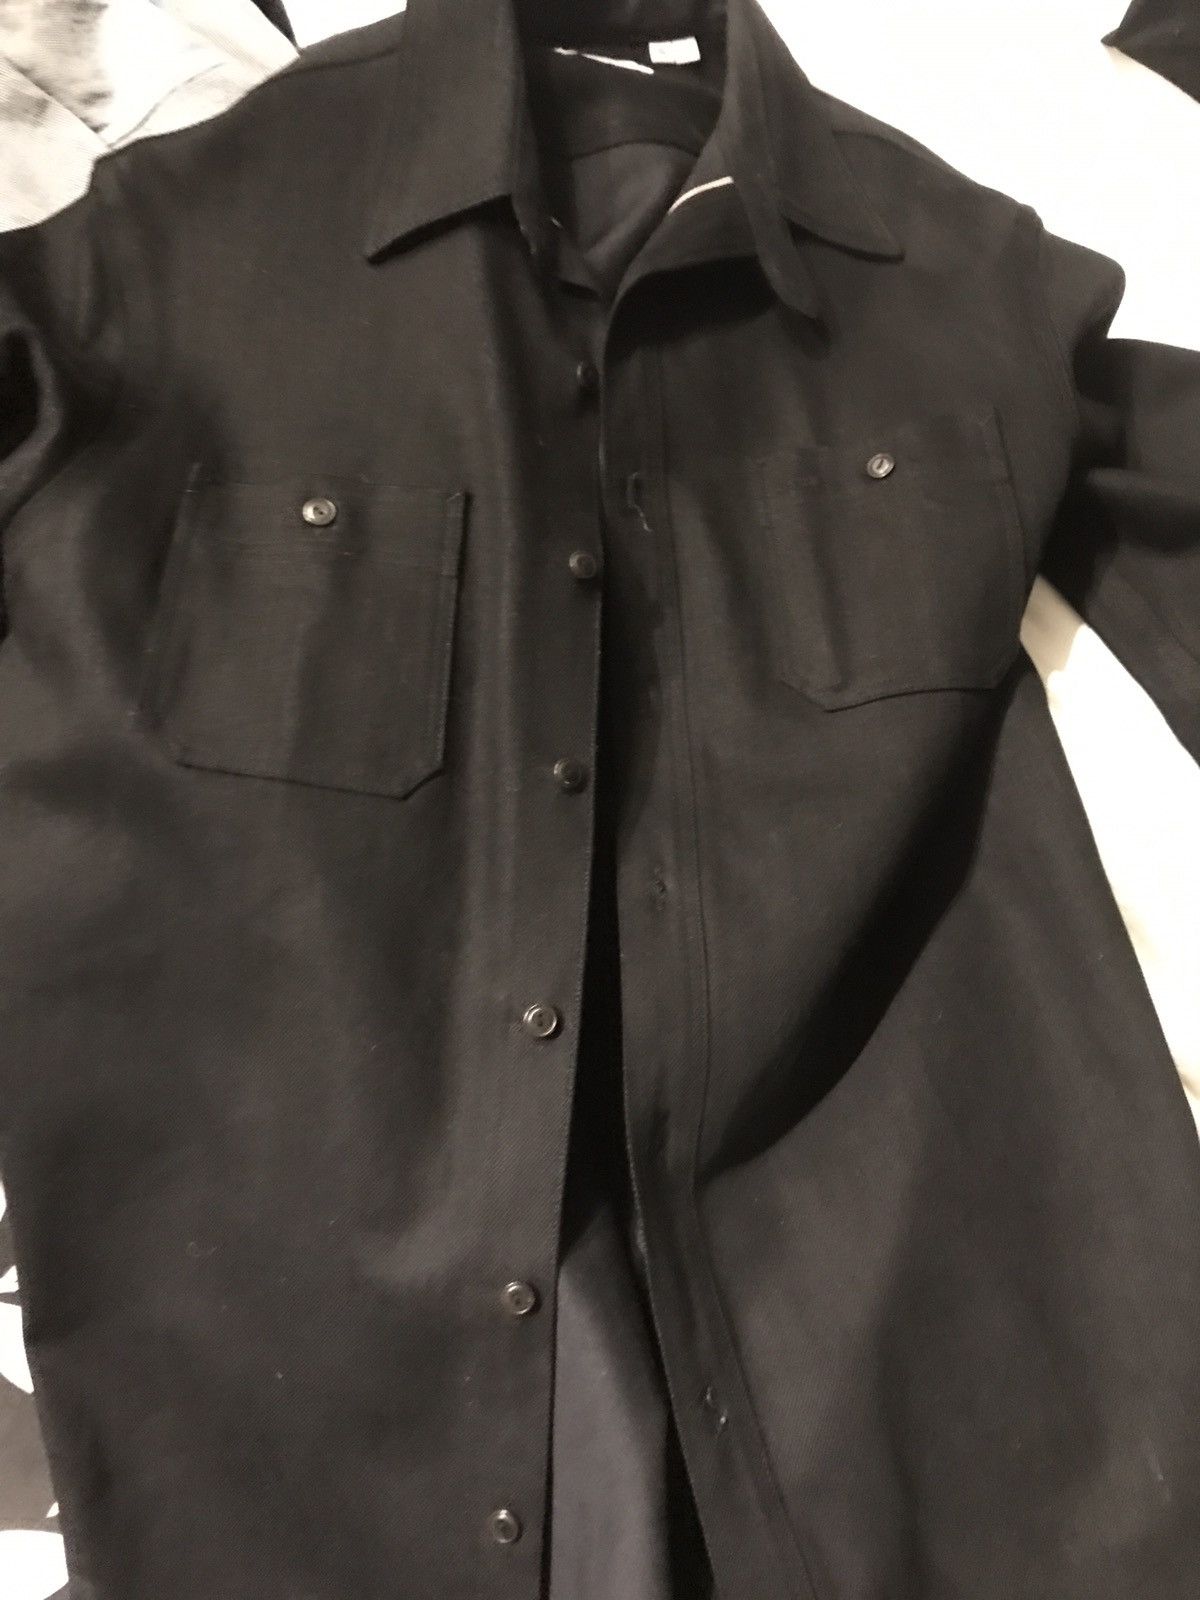 Gustin Black Selvedge Work Shirt | Grailed